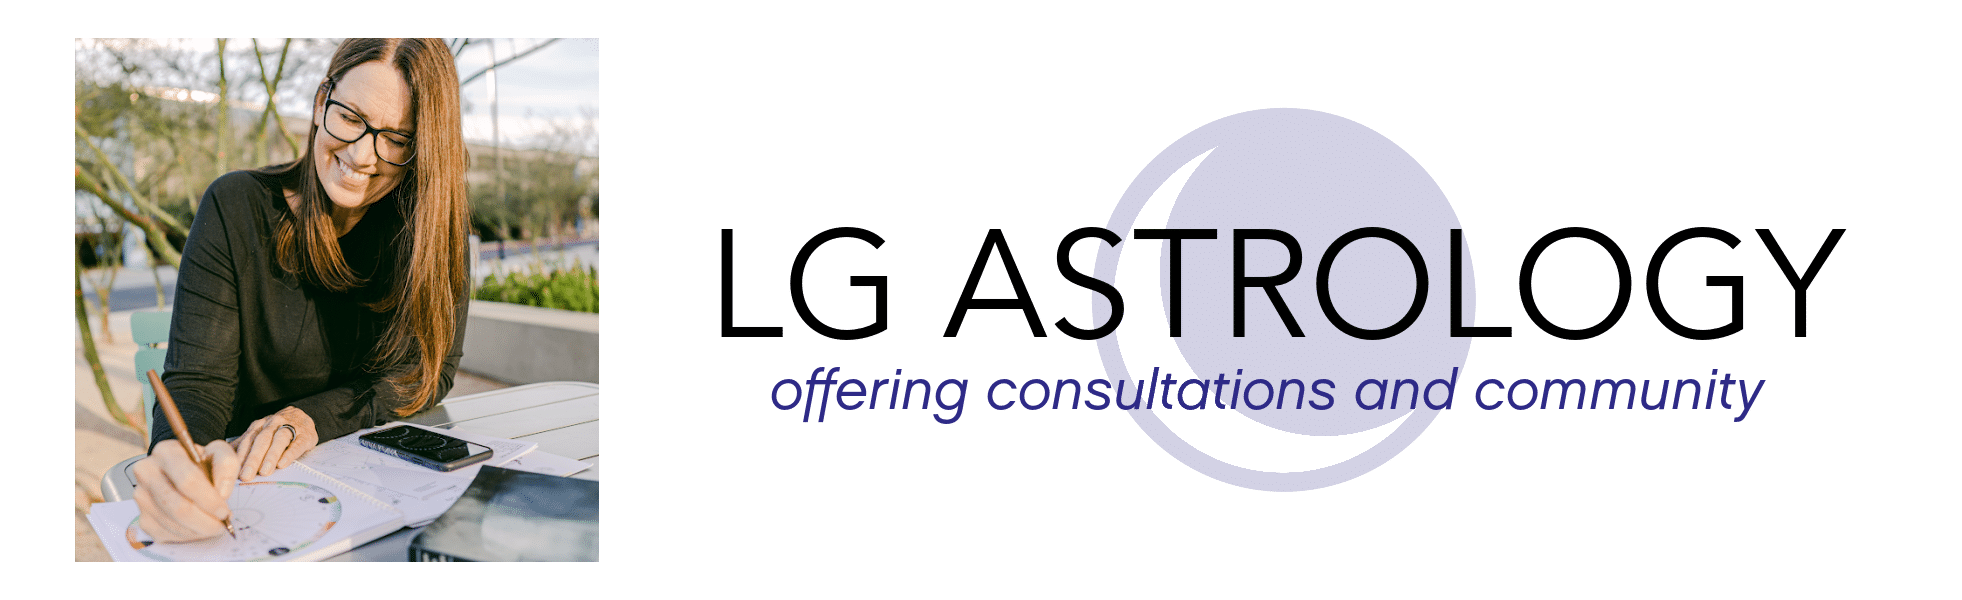 LG Astrology